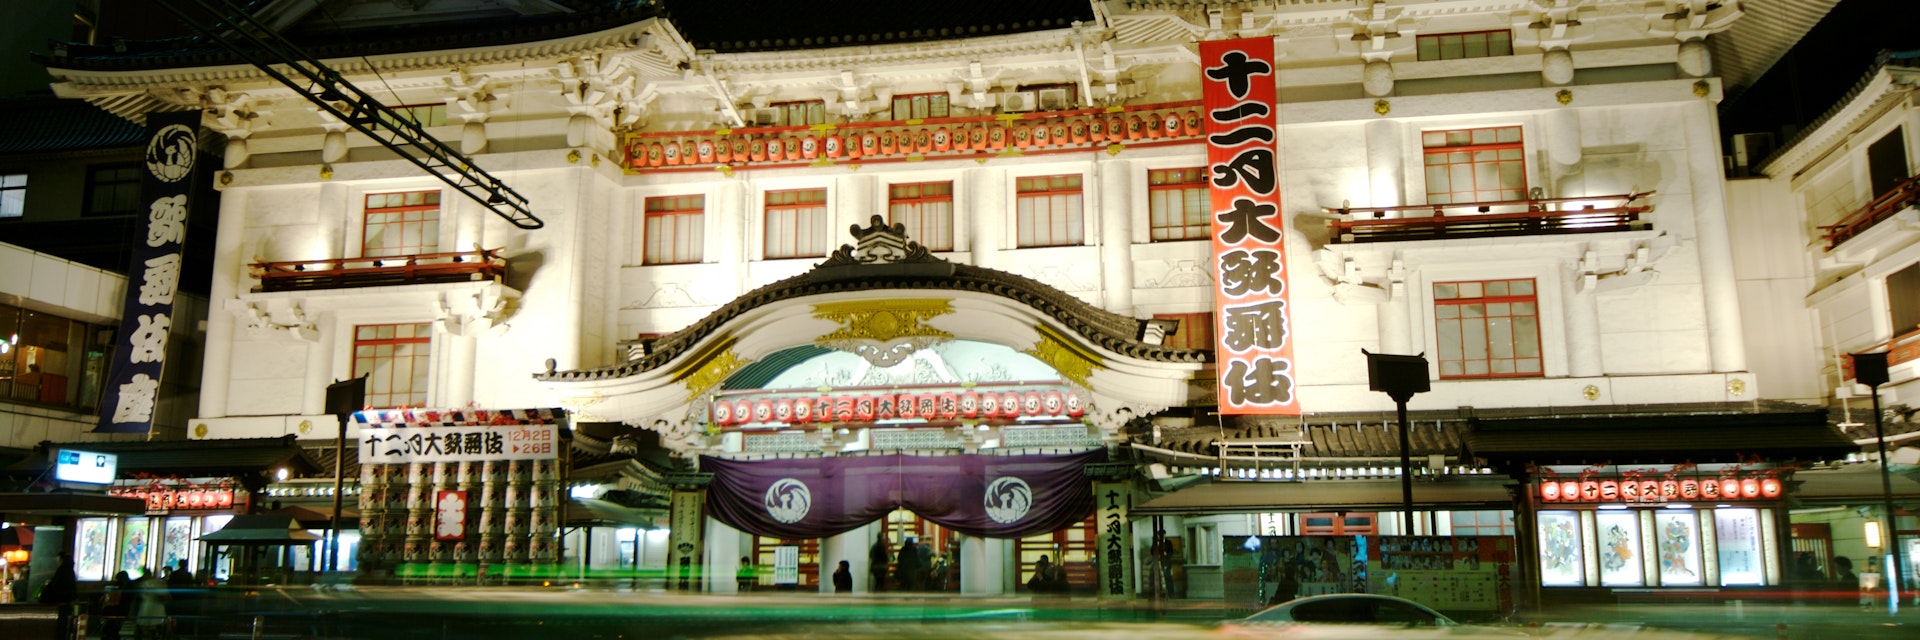 Kabuki-za Theater, Tokyo.